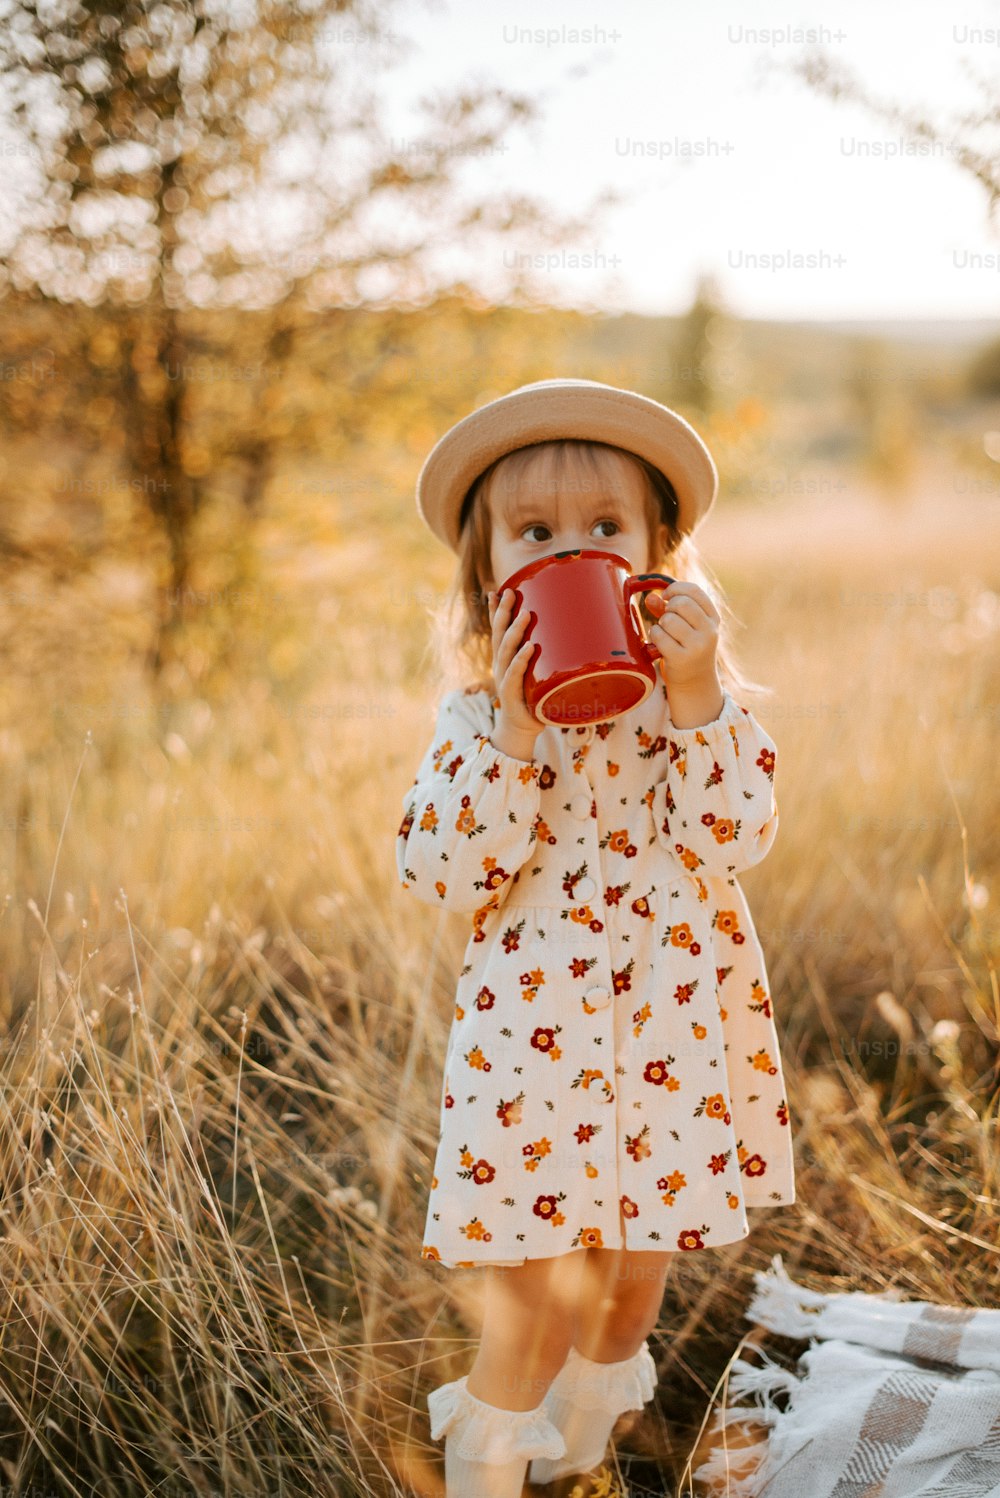 una bambina che indossa un cappello e tiene in mano una tazza rossa